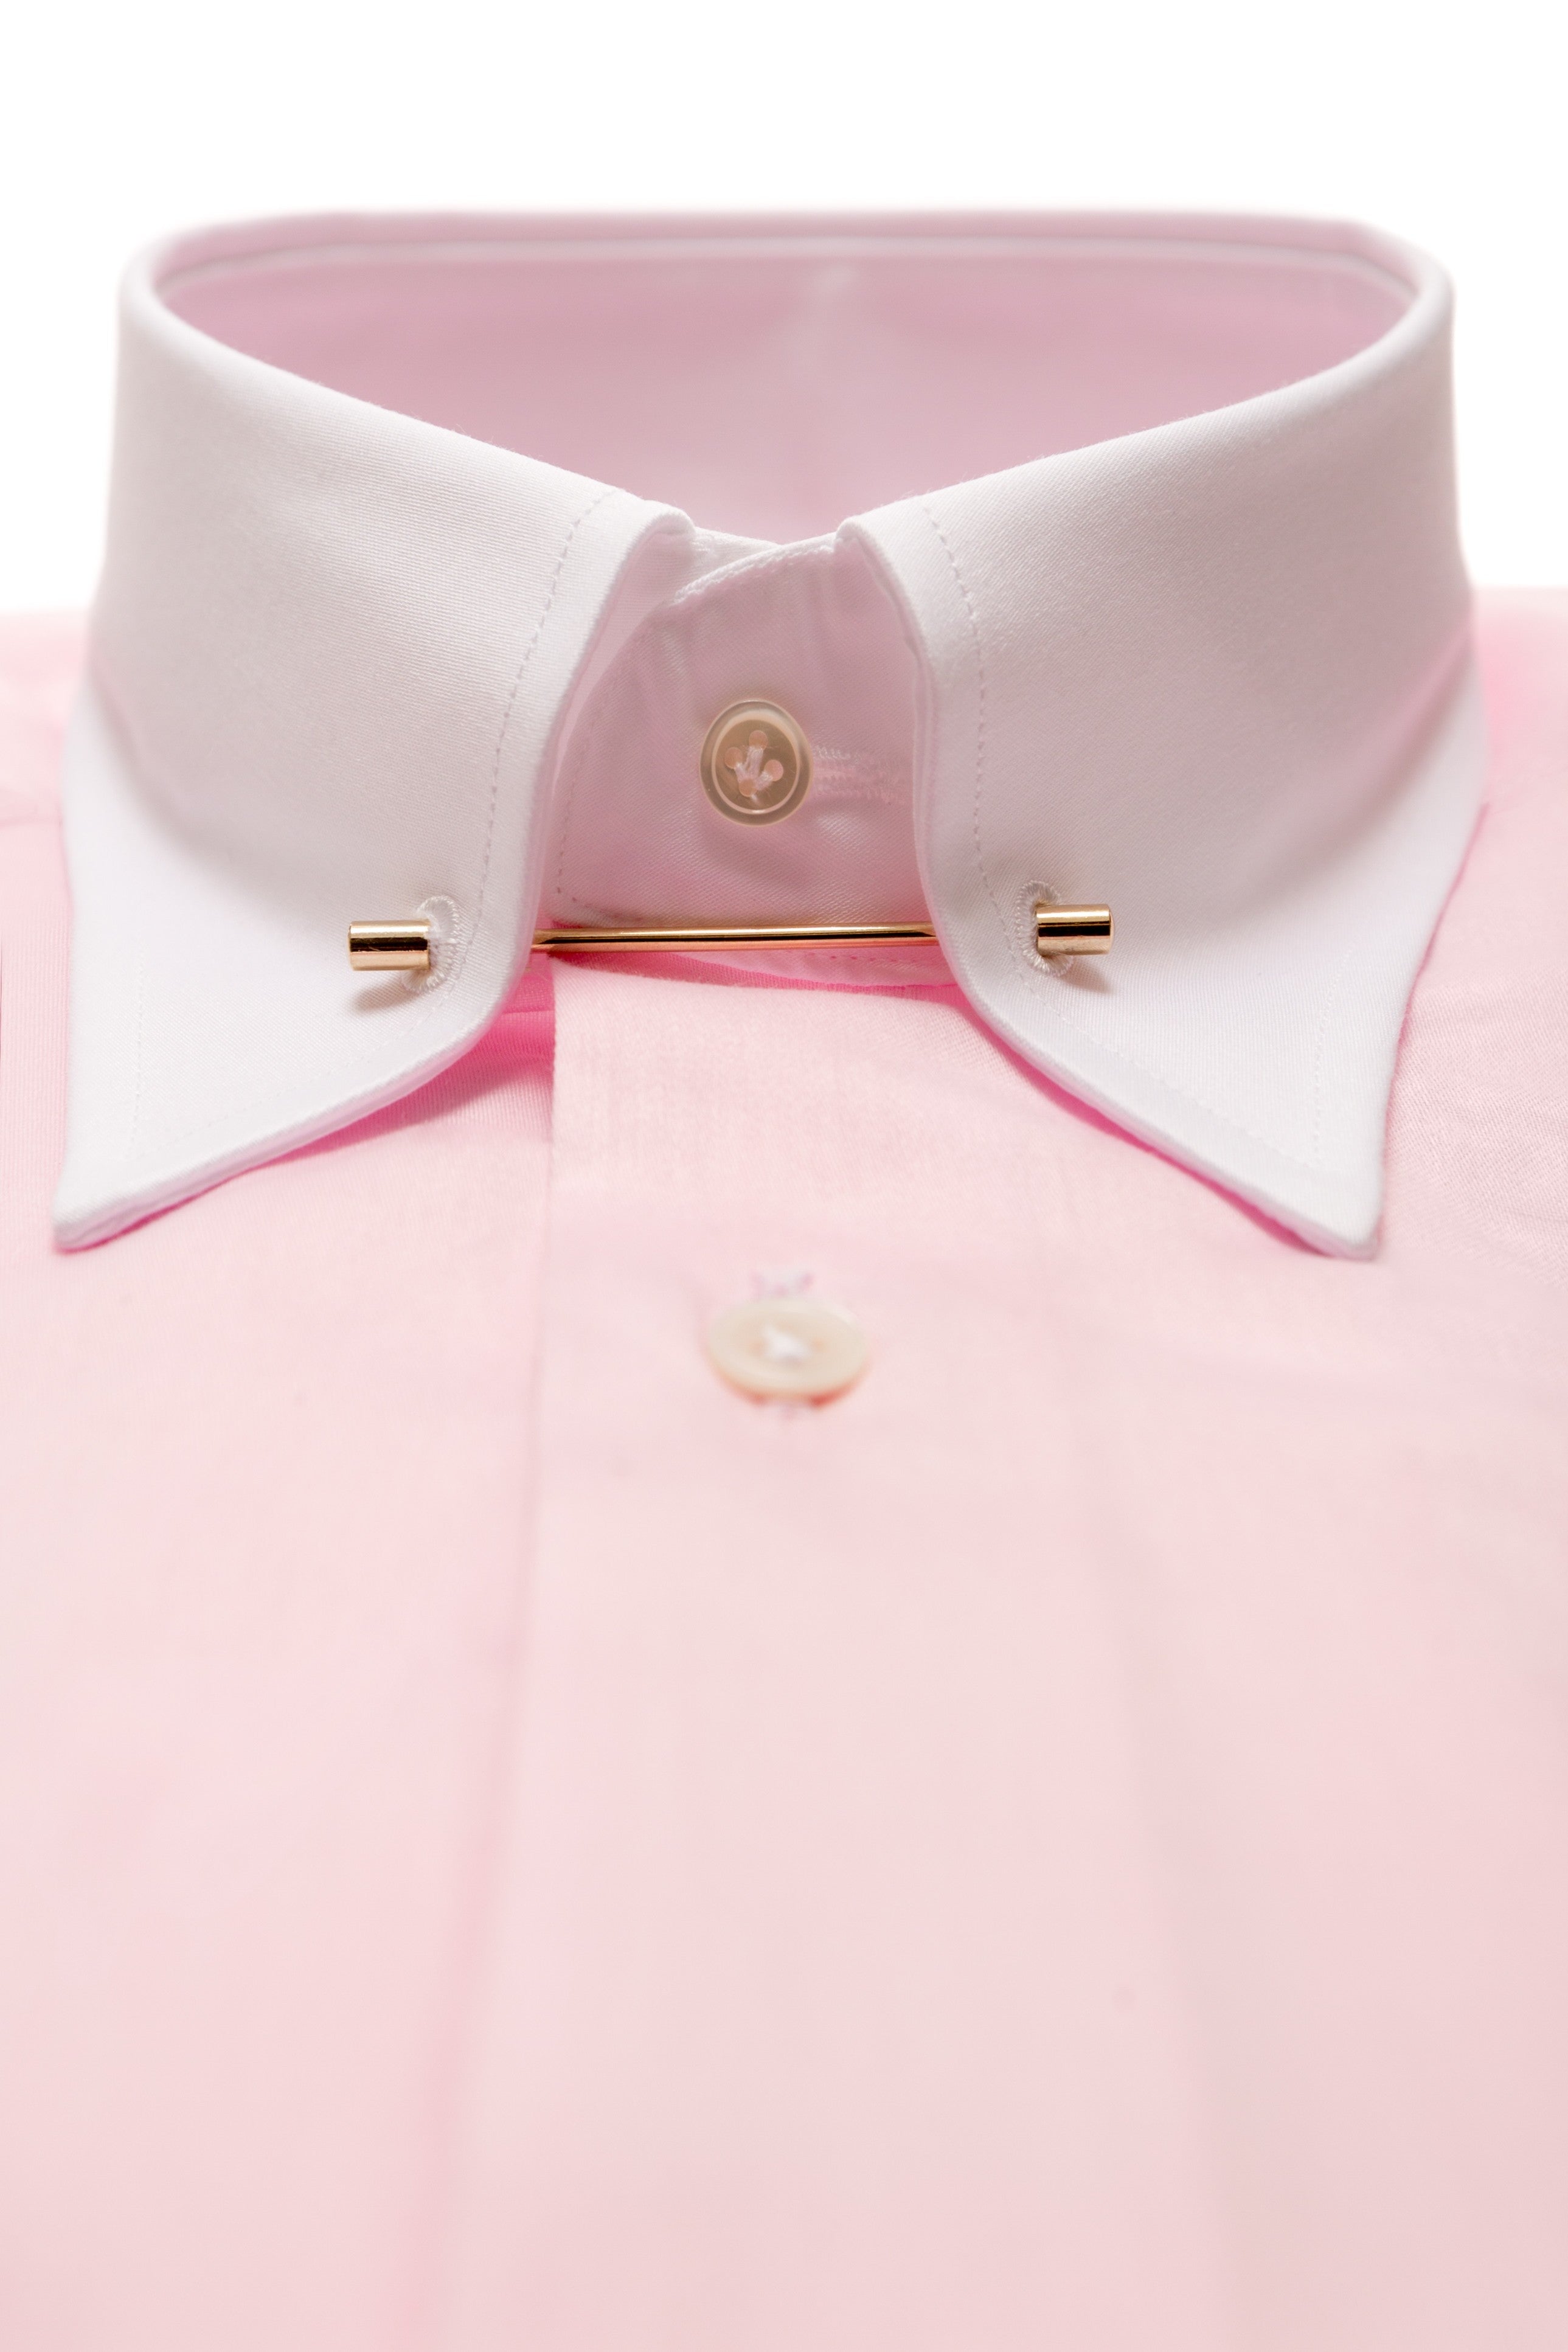 ピンクのシャツに白のピンカラー